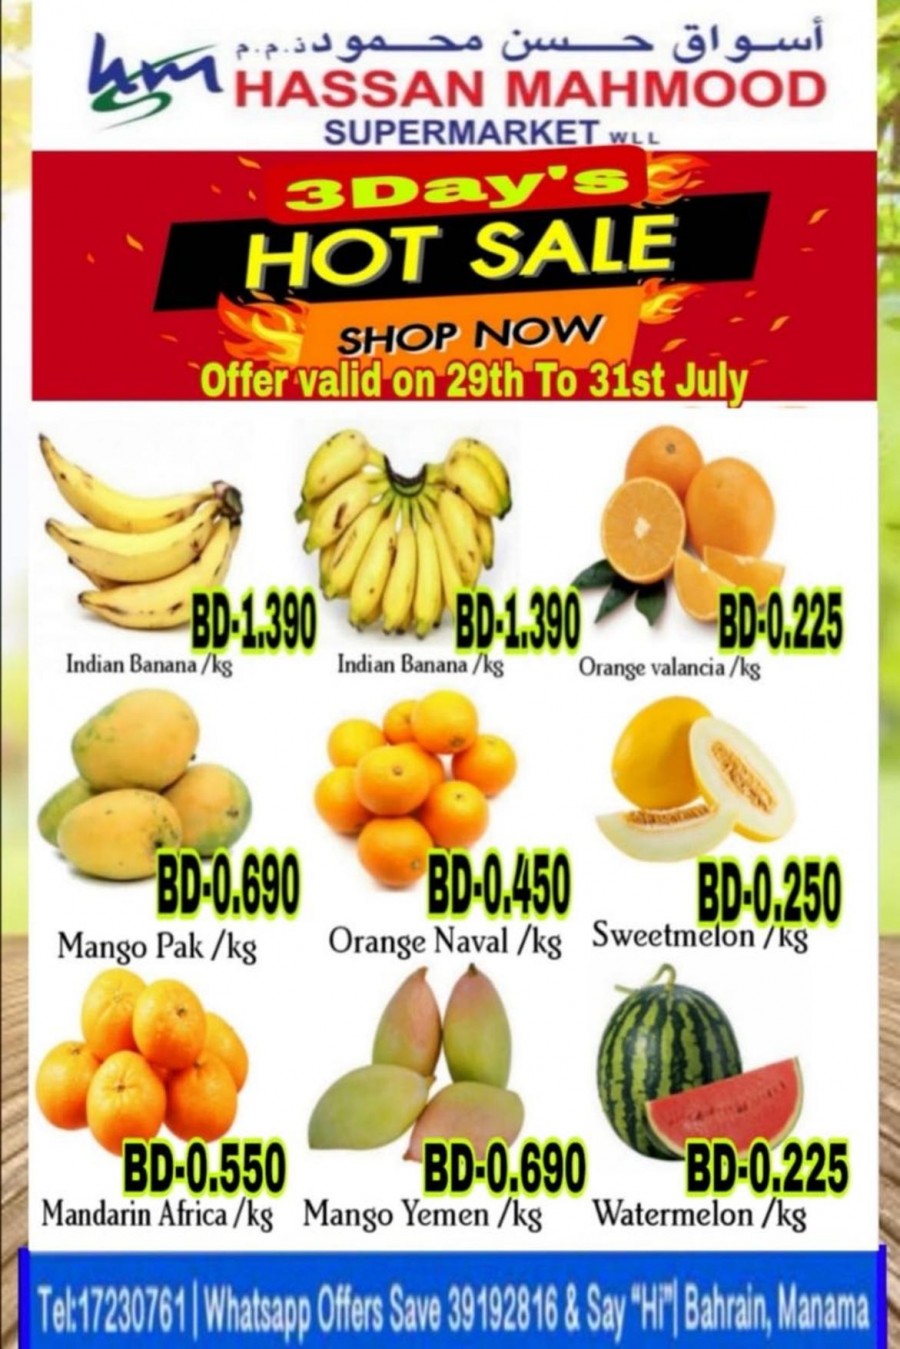 Hassan Mahmood 3 Day's Hot Sale